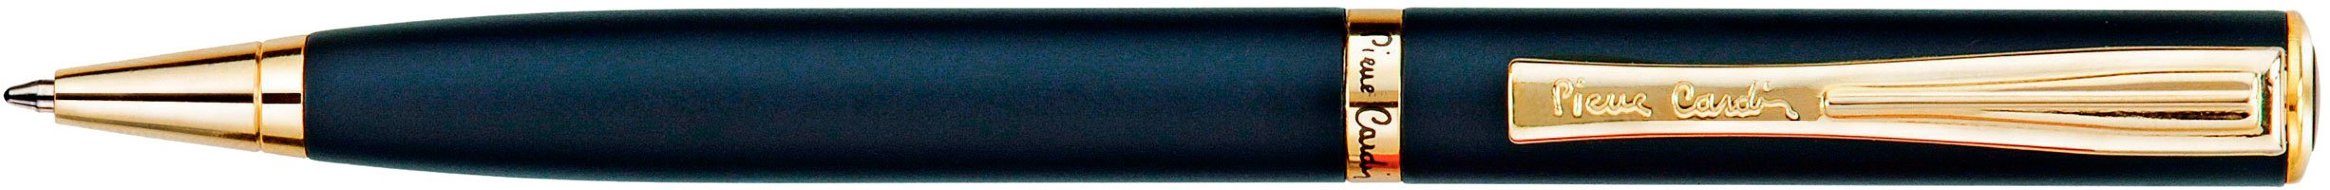 Шариковая ручка Pierre Cardin Eco черный матовый лак, позолота